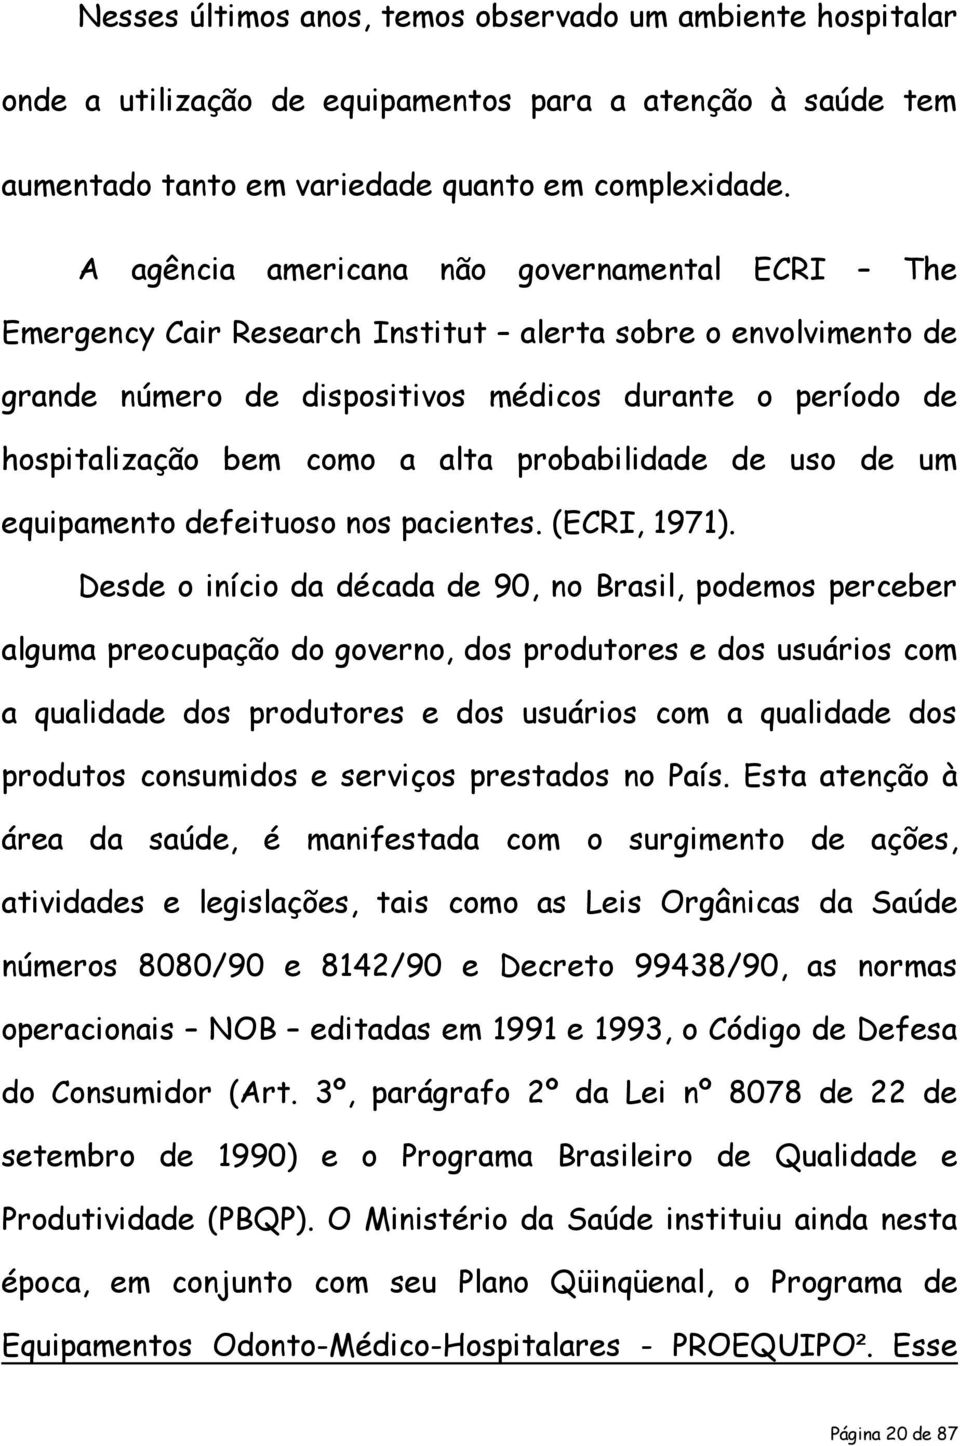 alta probabilidade de uso de um equipamento defeituoso nos pacientes. (ECRI, 1971).